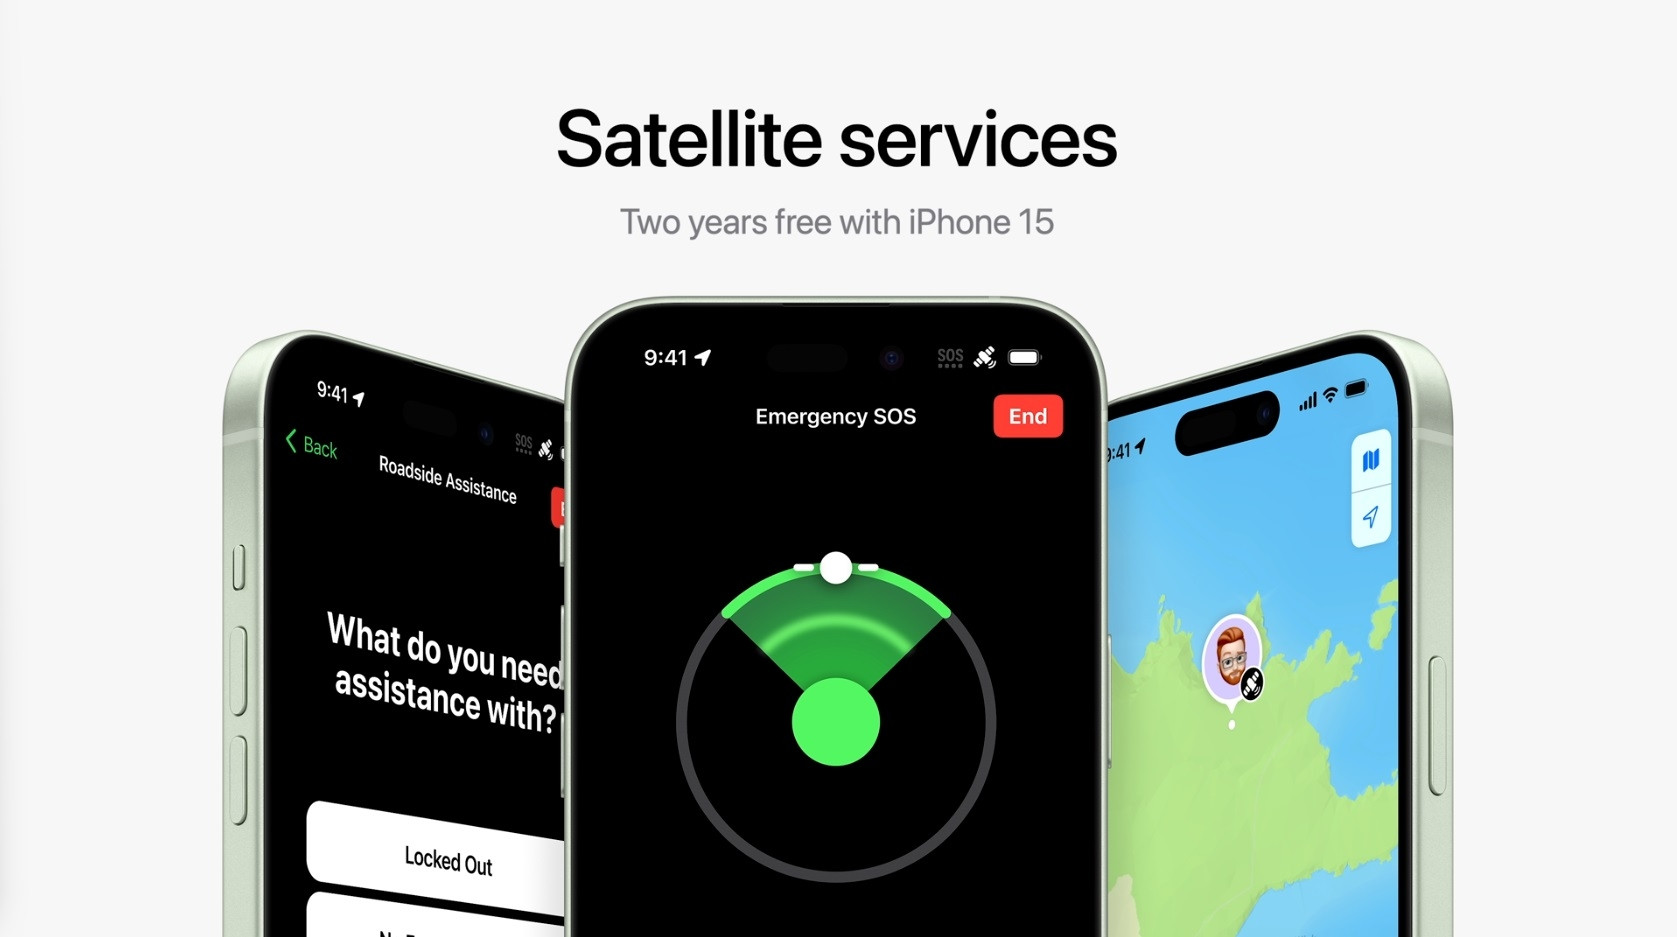 iPhone 15 satellite